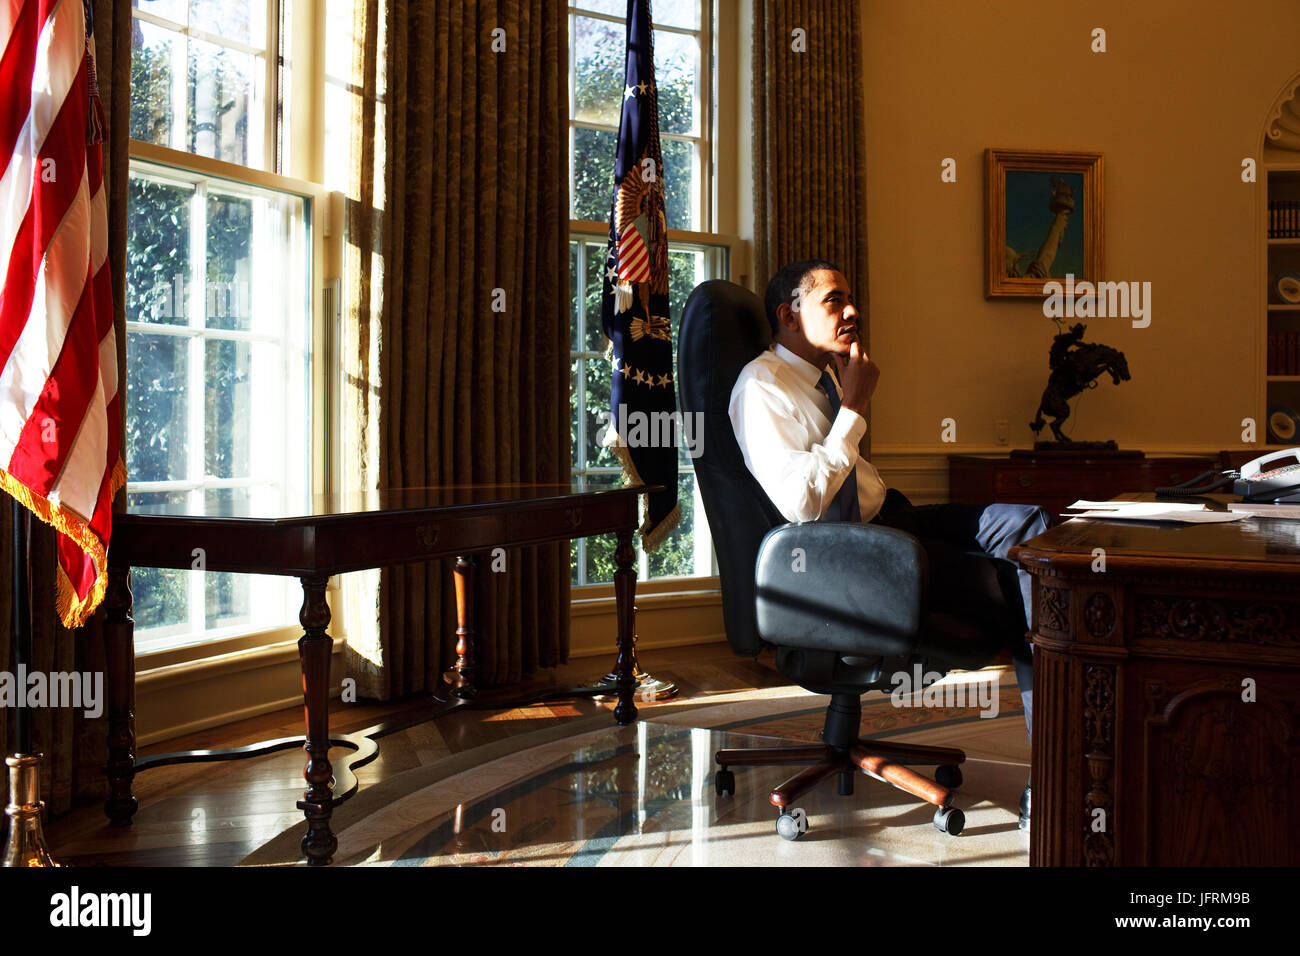 Le président Barack Obama dans le bureau ovale pour son premier jour au pouvoir 21/01/09. Photo Officiel de la Maison Blanche par Pete Souza Banque D'Images